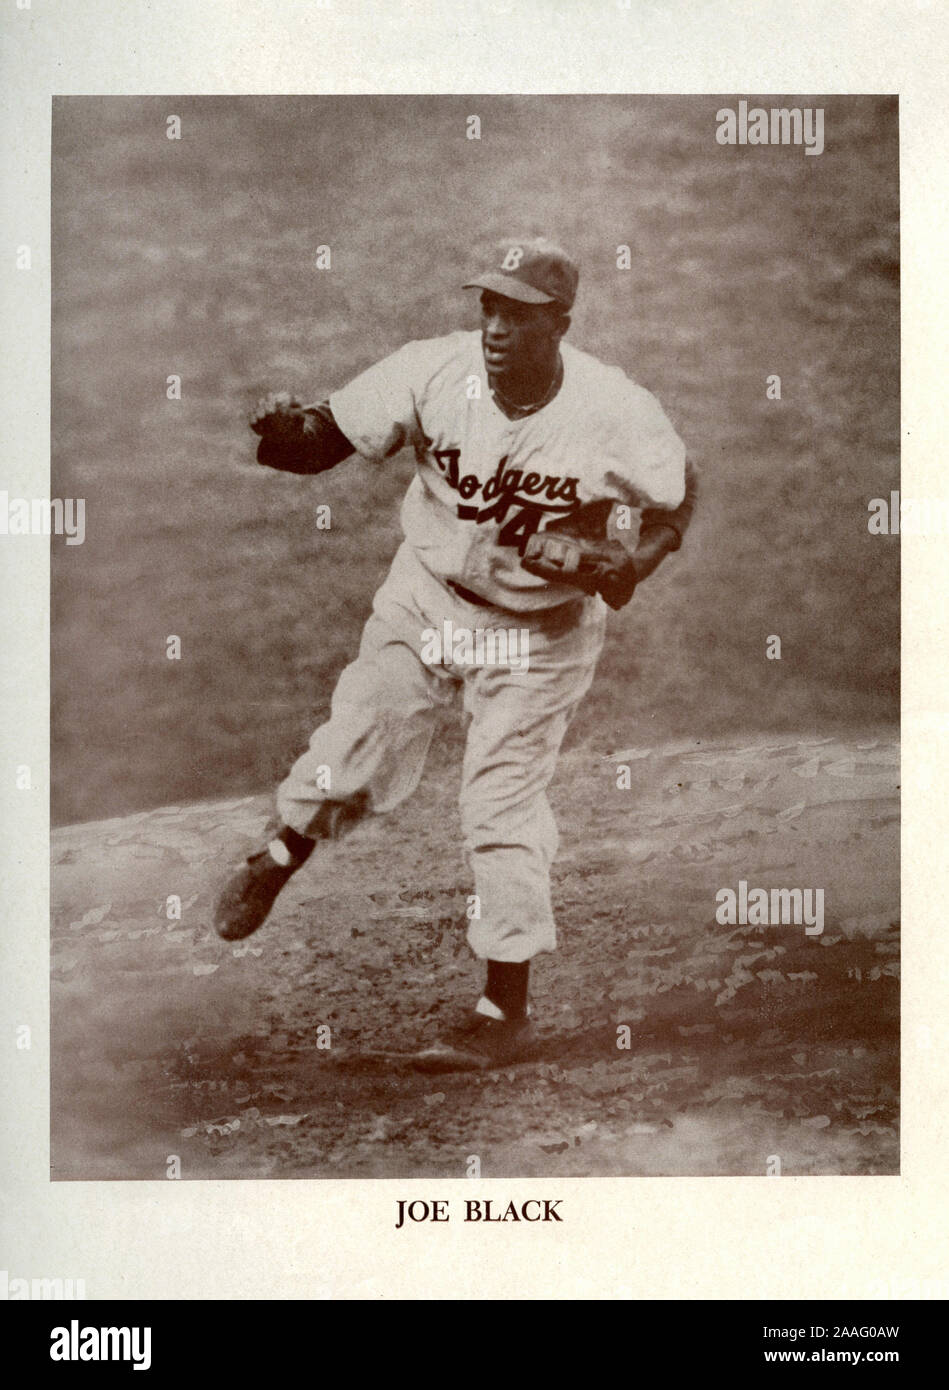 Eine 1950s Era baseball Zeitschrift schwarz-weiss Poster Bild von Brooklyn Schwindler Sternkrug Joe Black, Stockfoto